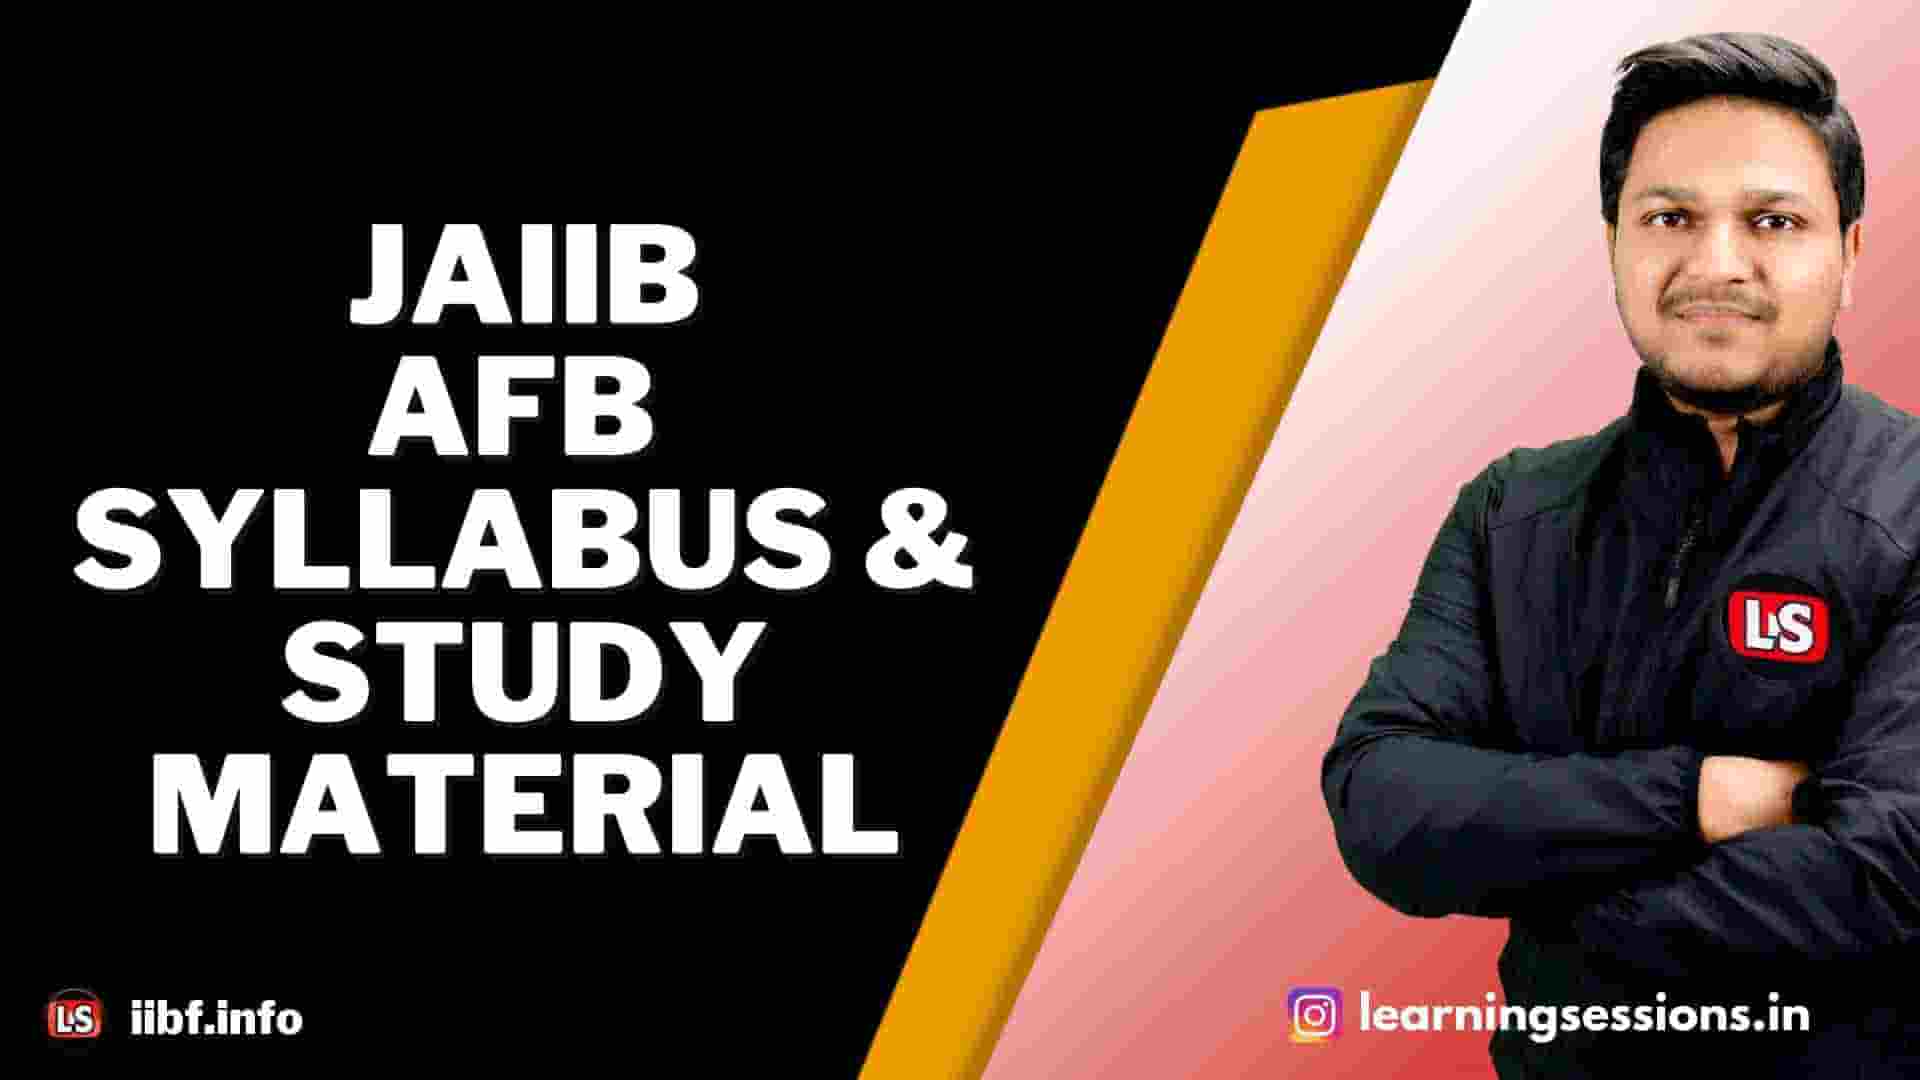 IIBF JAIIB AFB SYLLABUS & STUDY MATERIAL 2022